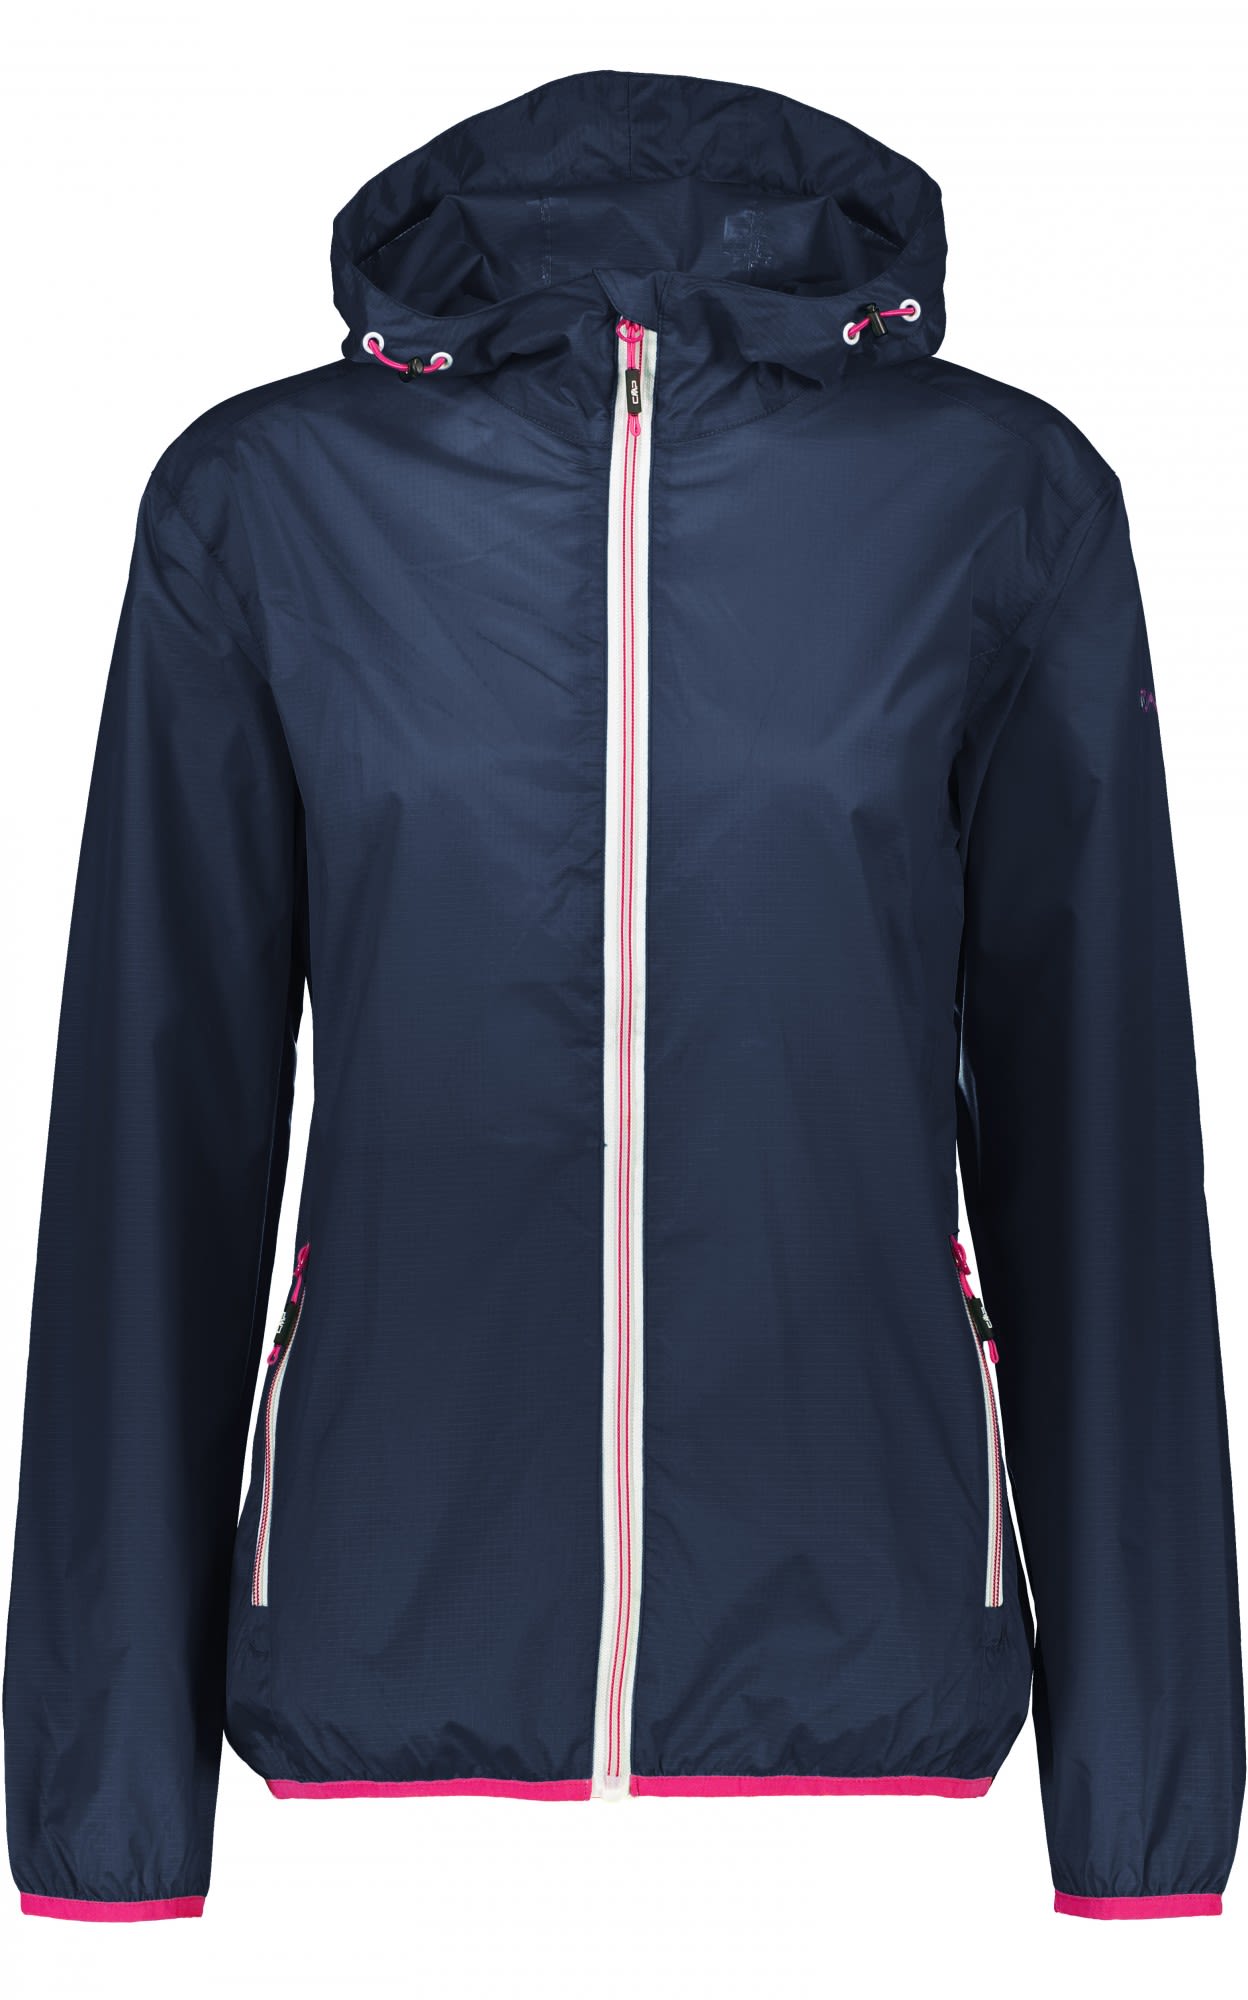 CMP FIX Hood Jacket Ripstop Blau- Female Regenjacken und Hardshells- Grsse 34 - Farbe Navy unter CMP